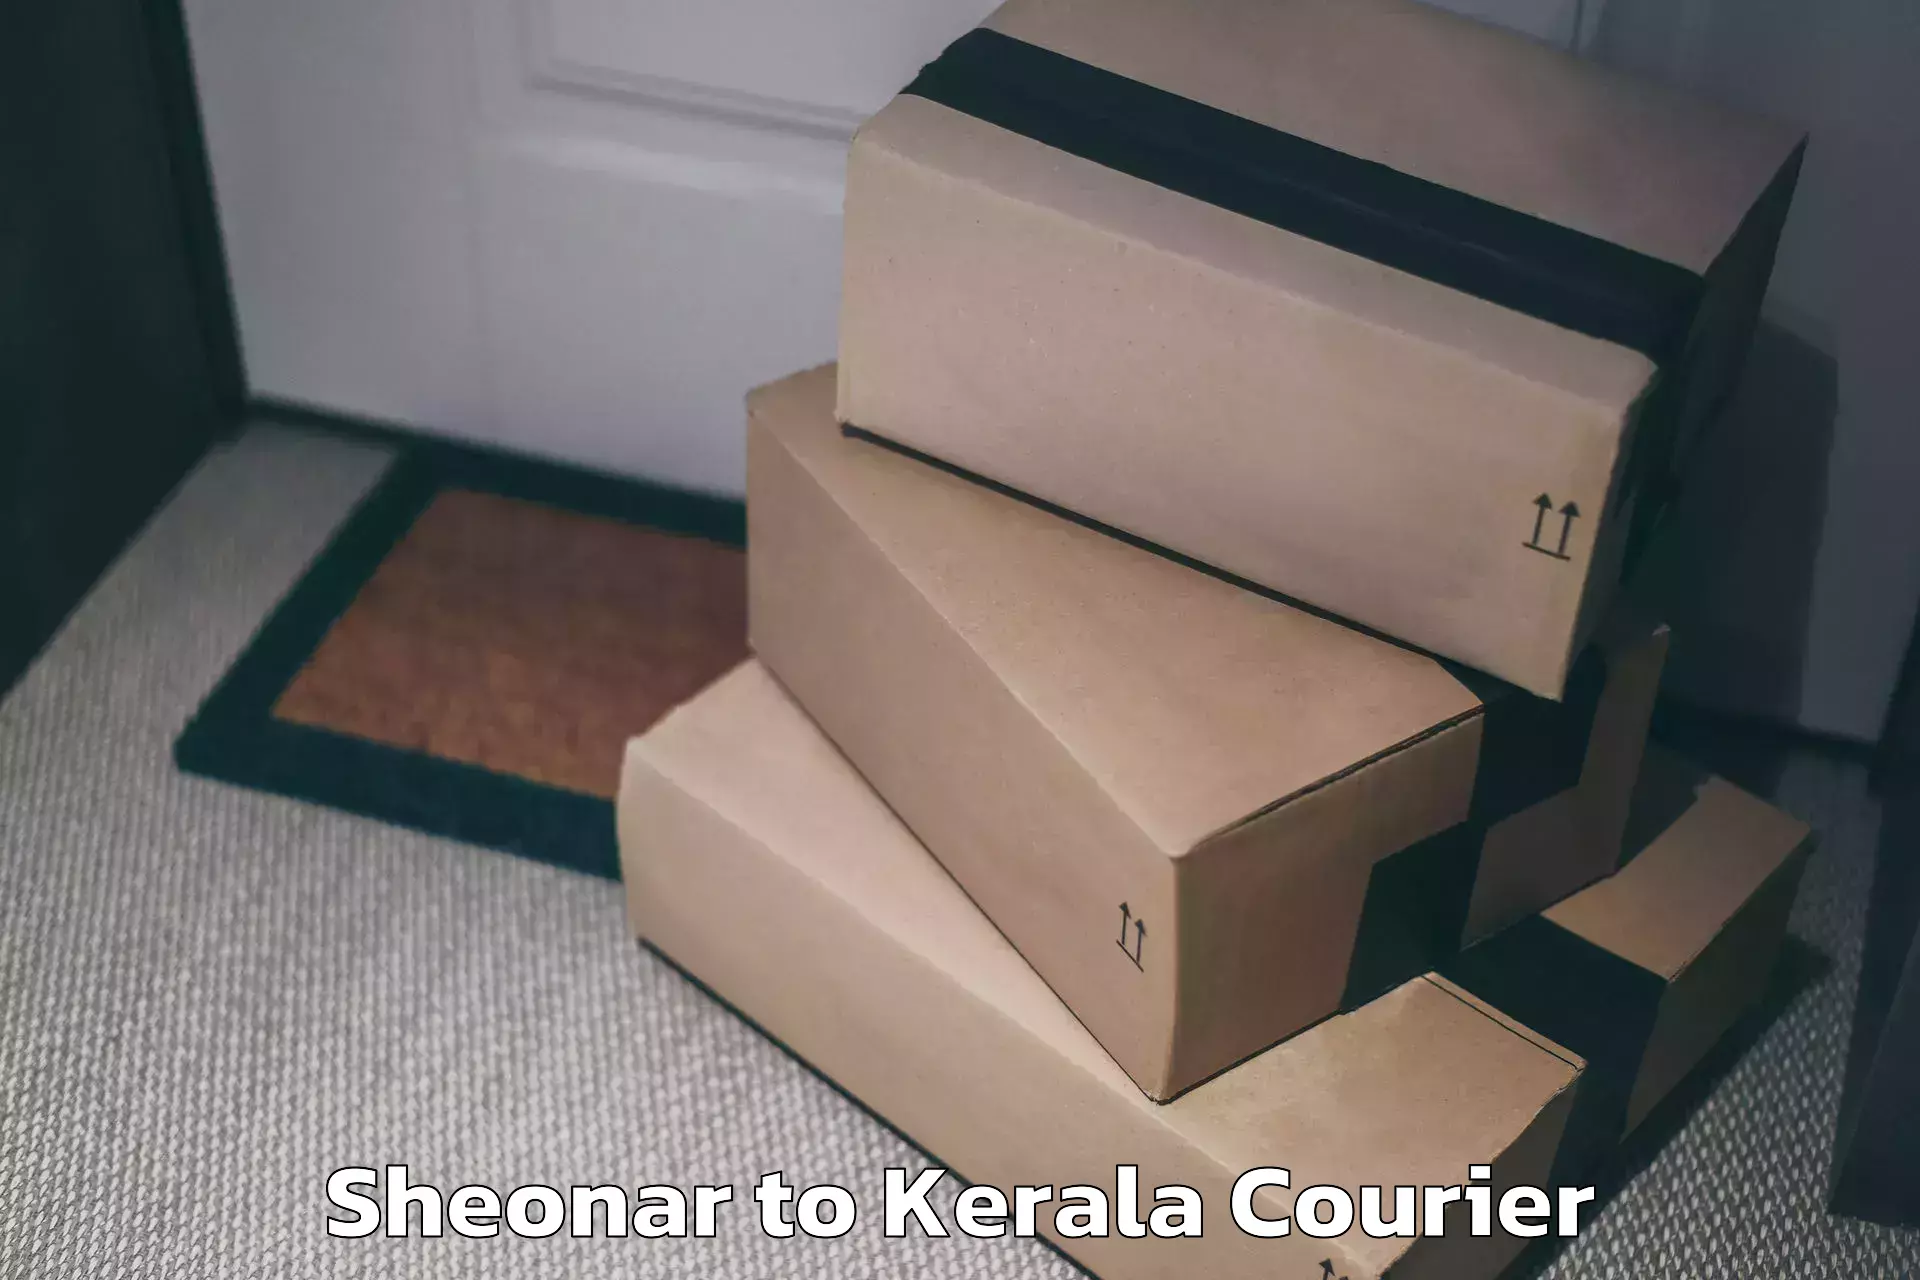 Door-to-door baggage service Sheonar to Kerala